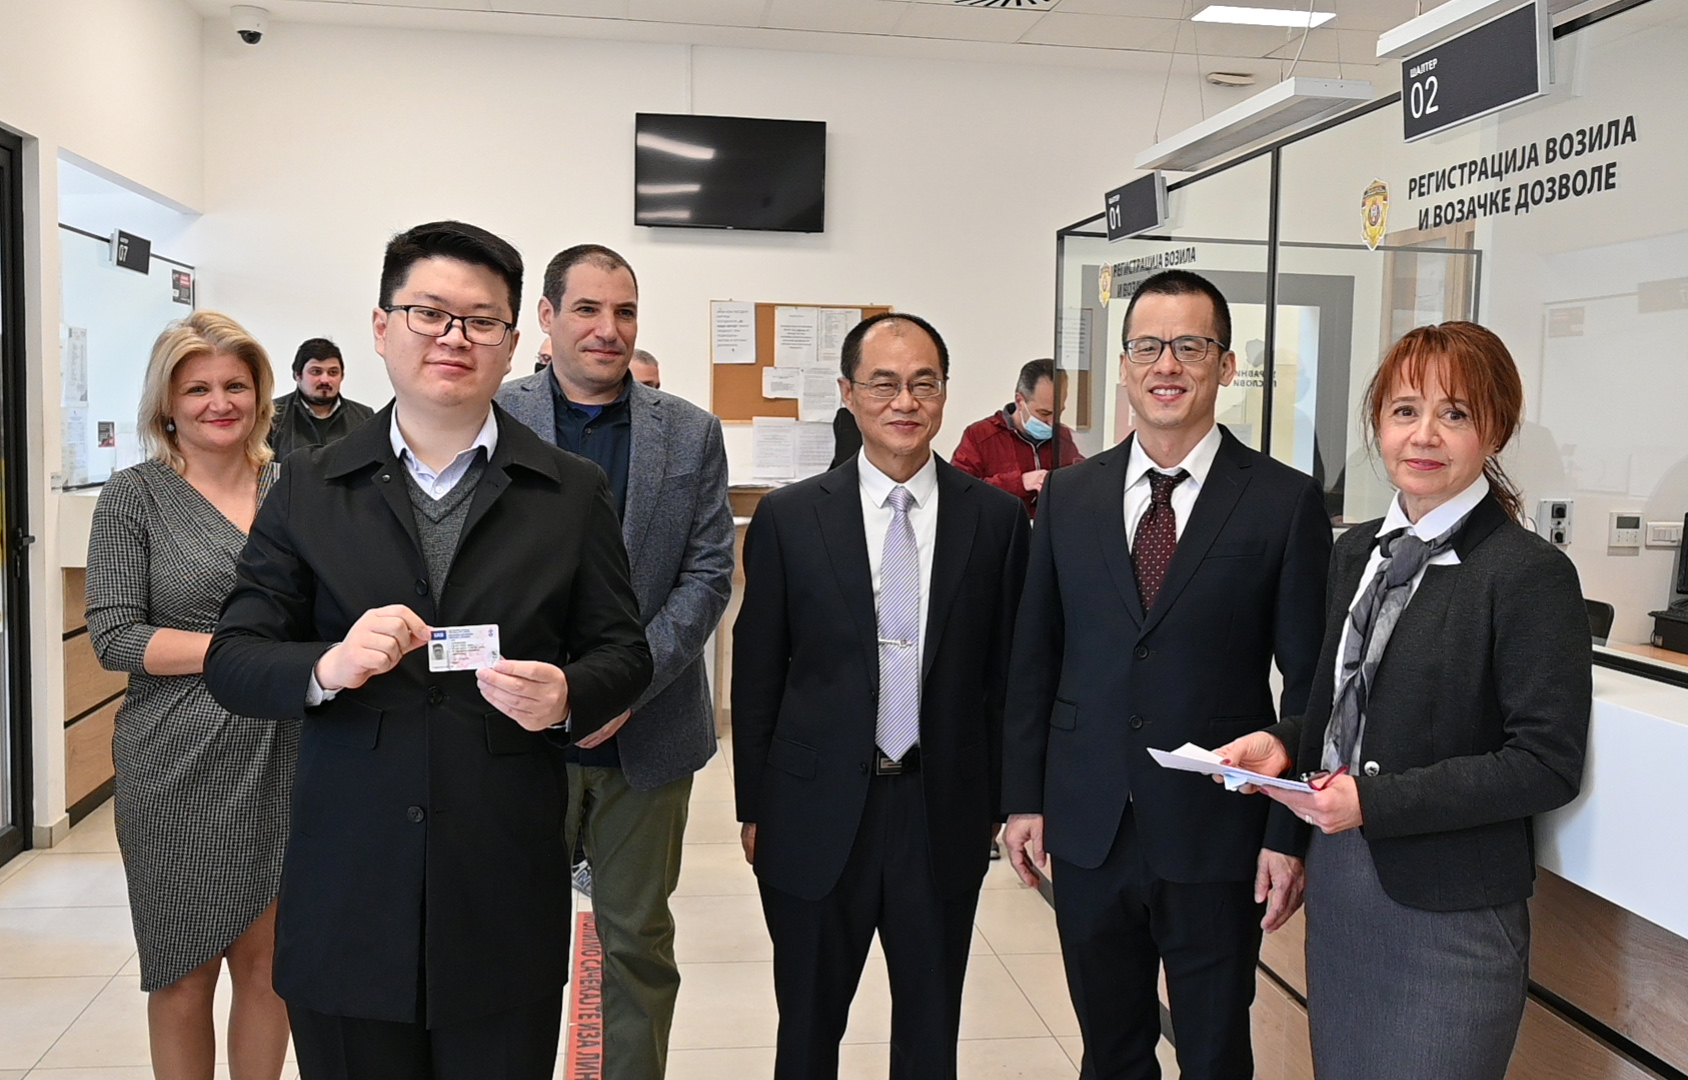 Прва замена кинеске возачке дозволе за српску, по основу Споразума о међусобном признању и замени возачких дозвола